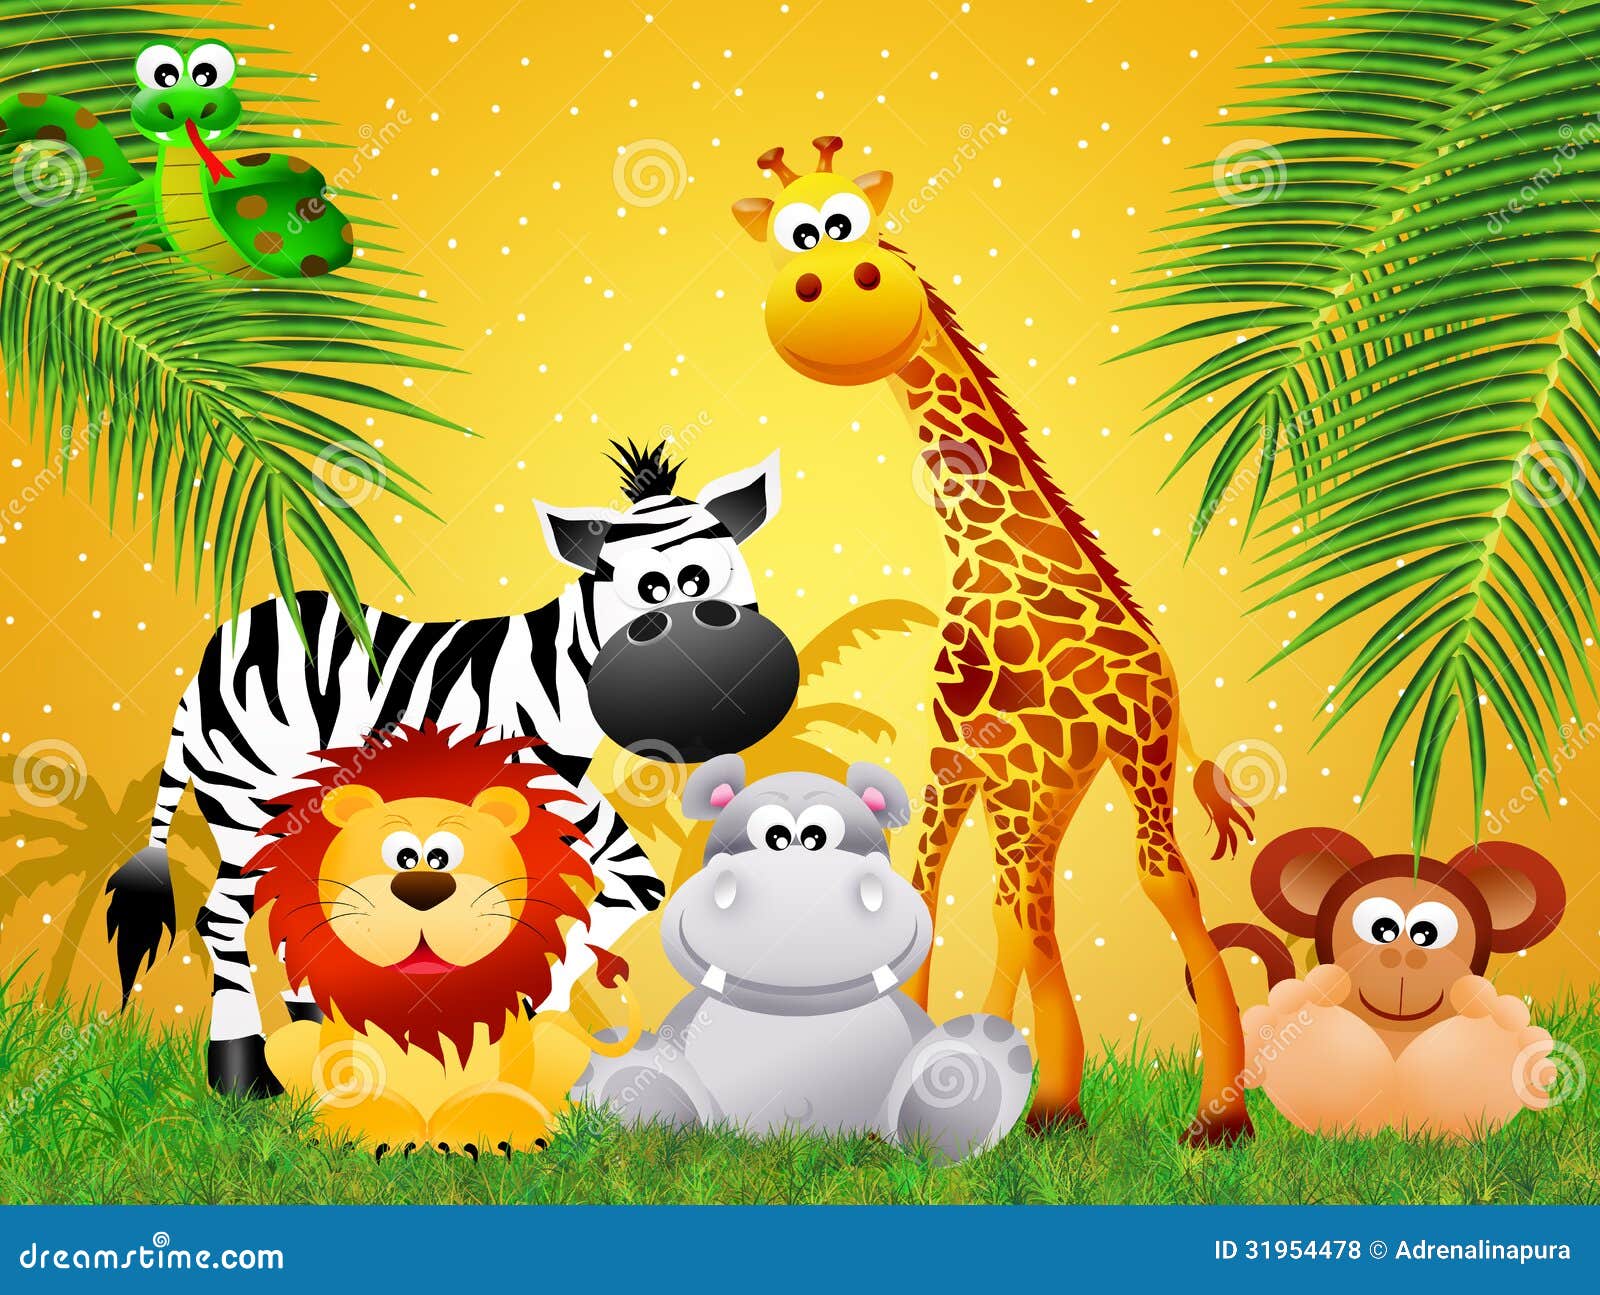 Zoo animals cartoon stock illustration. Illustration of trees - 31954478